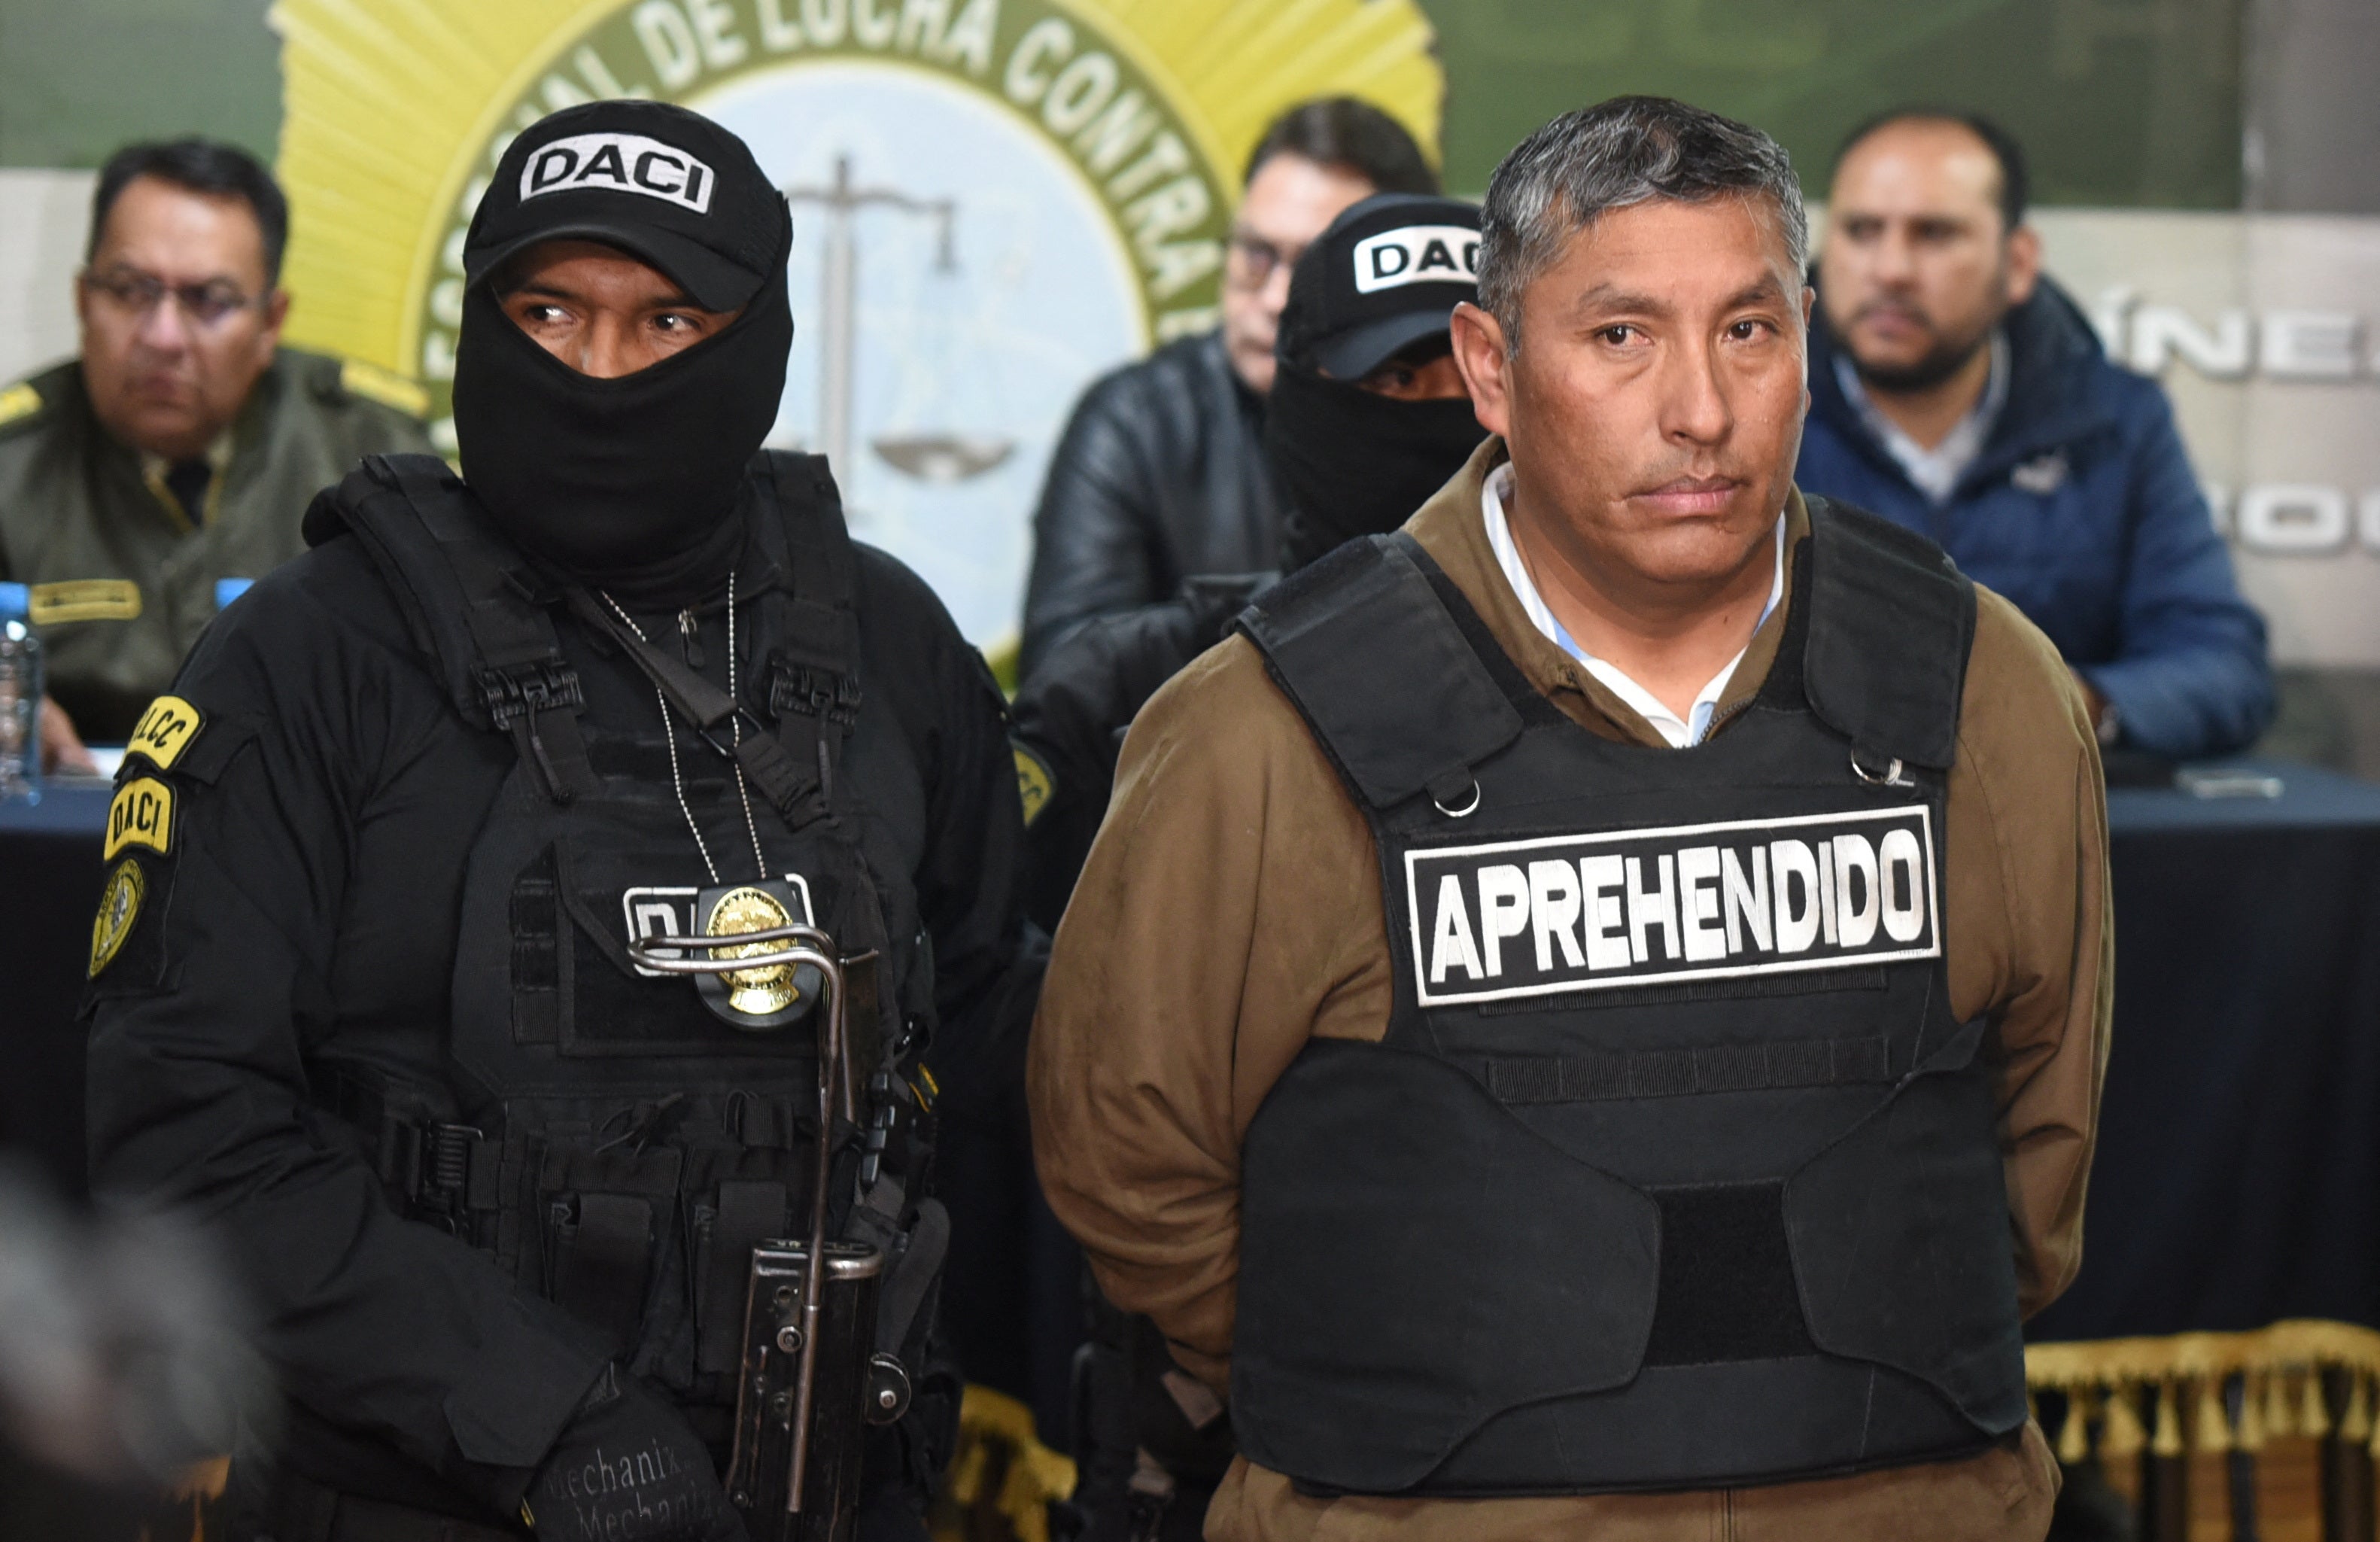 Der bolivianische Vizeadmiral Juan Arnes Salvador wurde nach seiner Festnahme durch die Behörden in La Paz wegen seiner angeblichen Beteiligung an einem Putschversuch angeklagt.